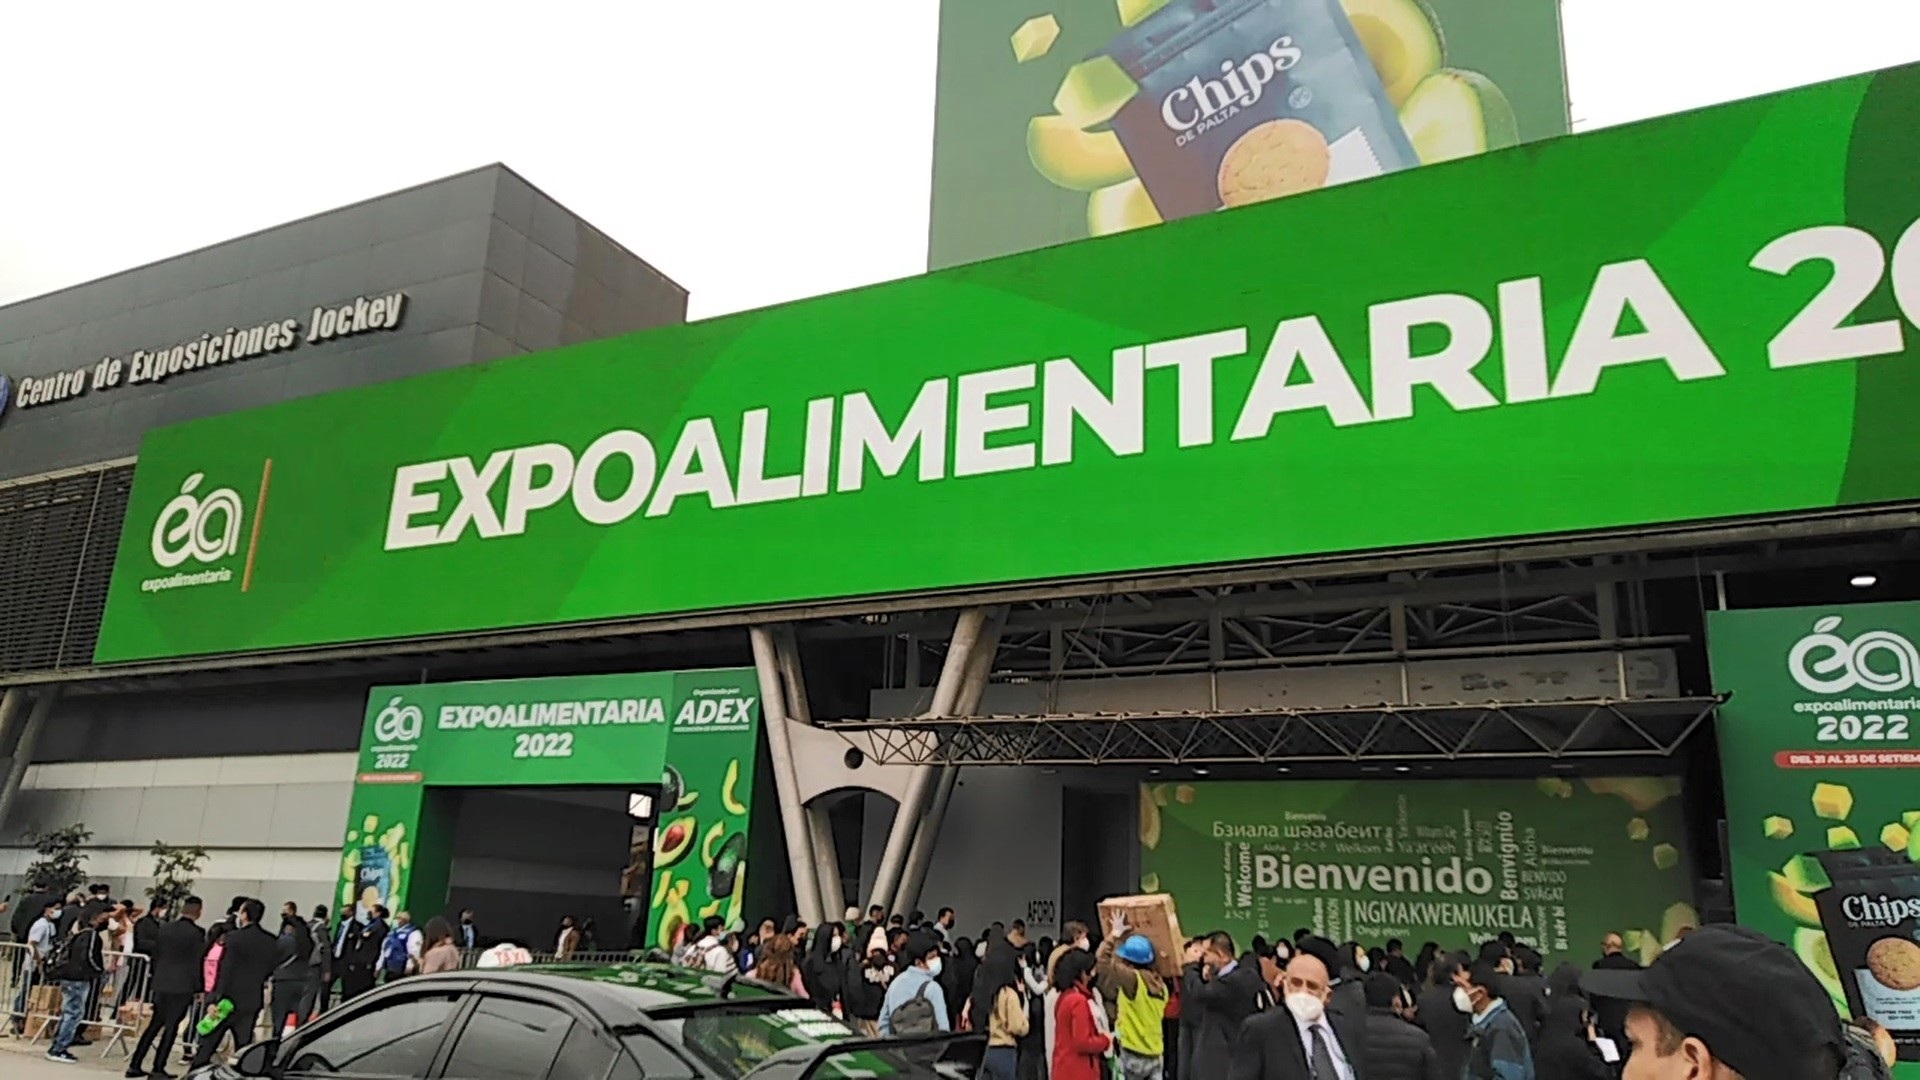 Expoalimentaria la feria de alimentos más importante de América Latina del 25 al 27 de septiembre en el Centro de Convenciones Jockey en Lima.